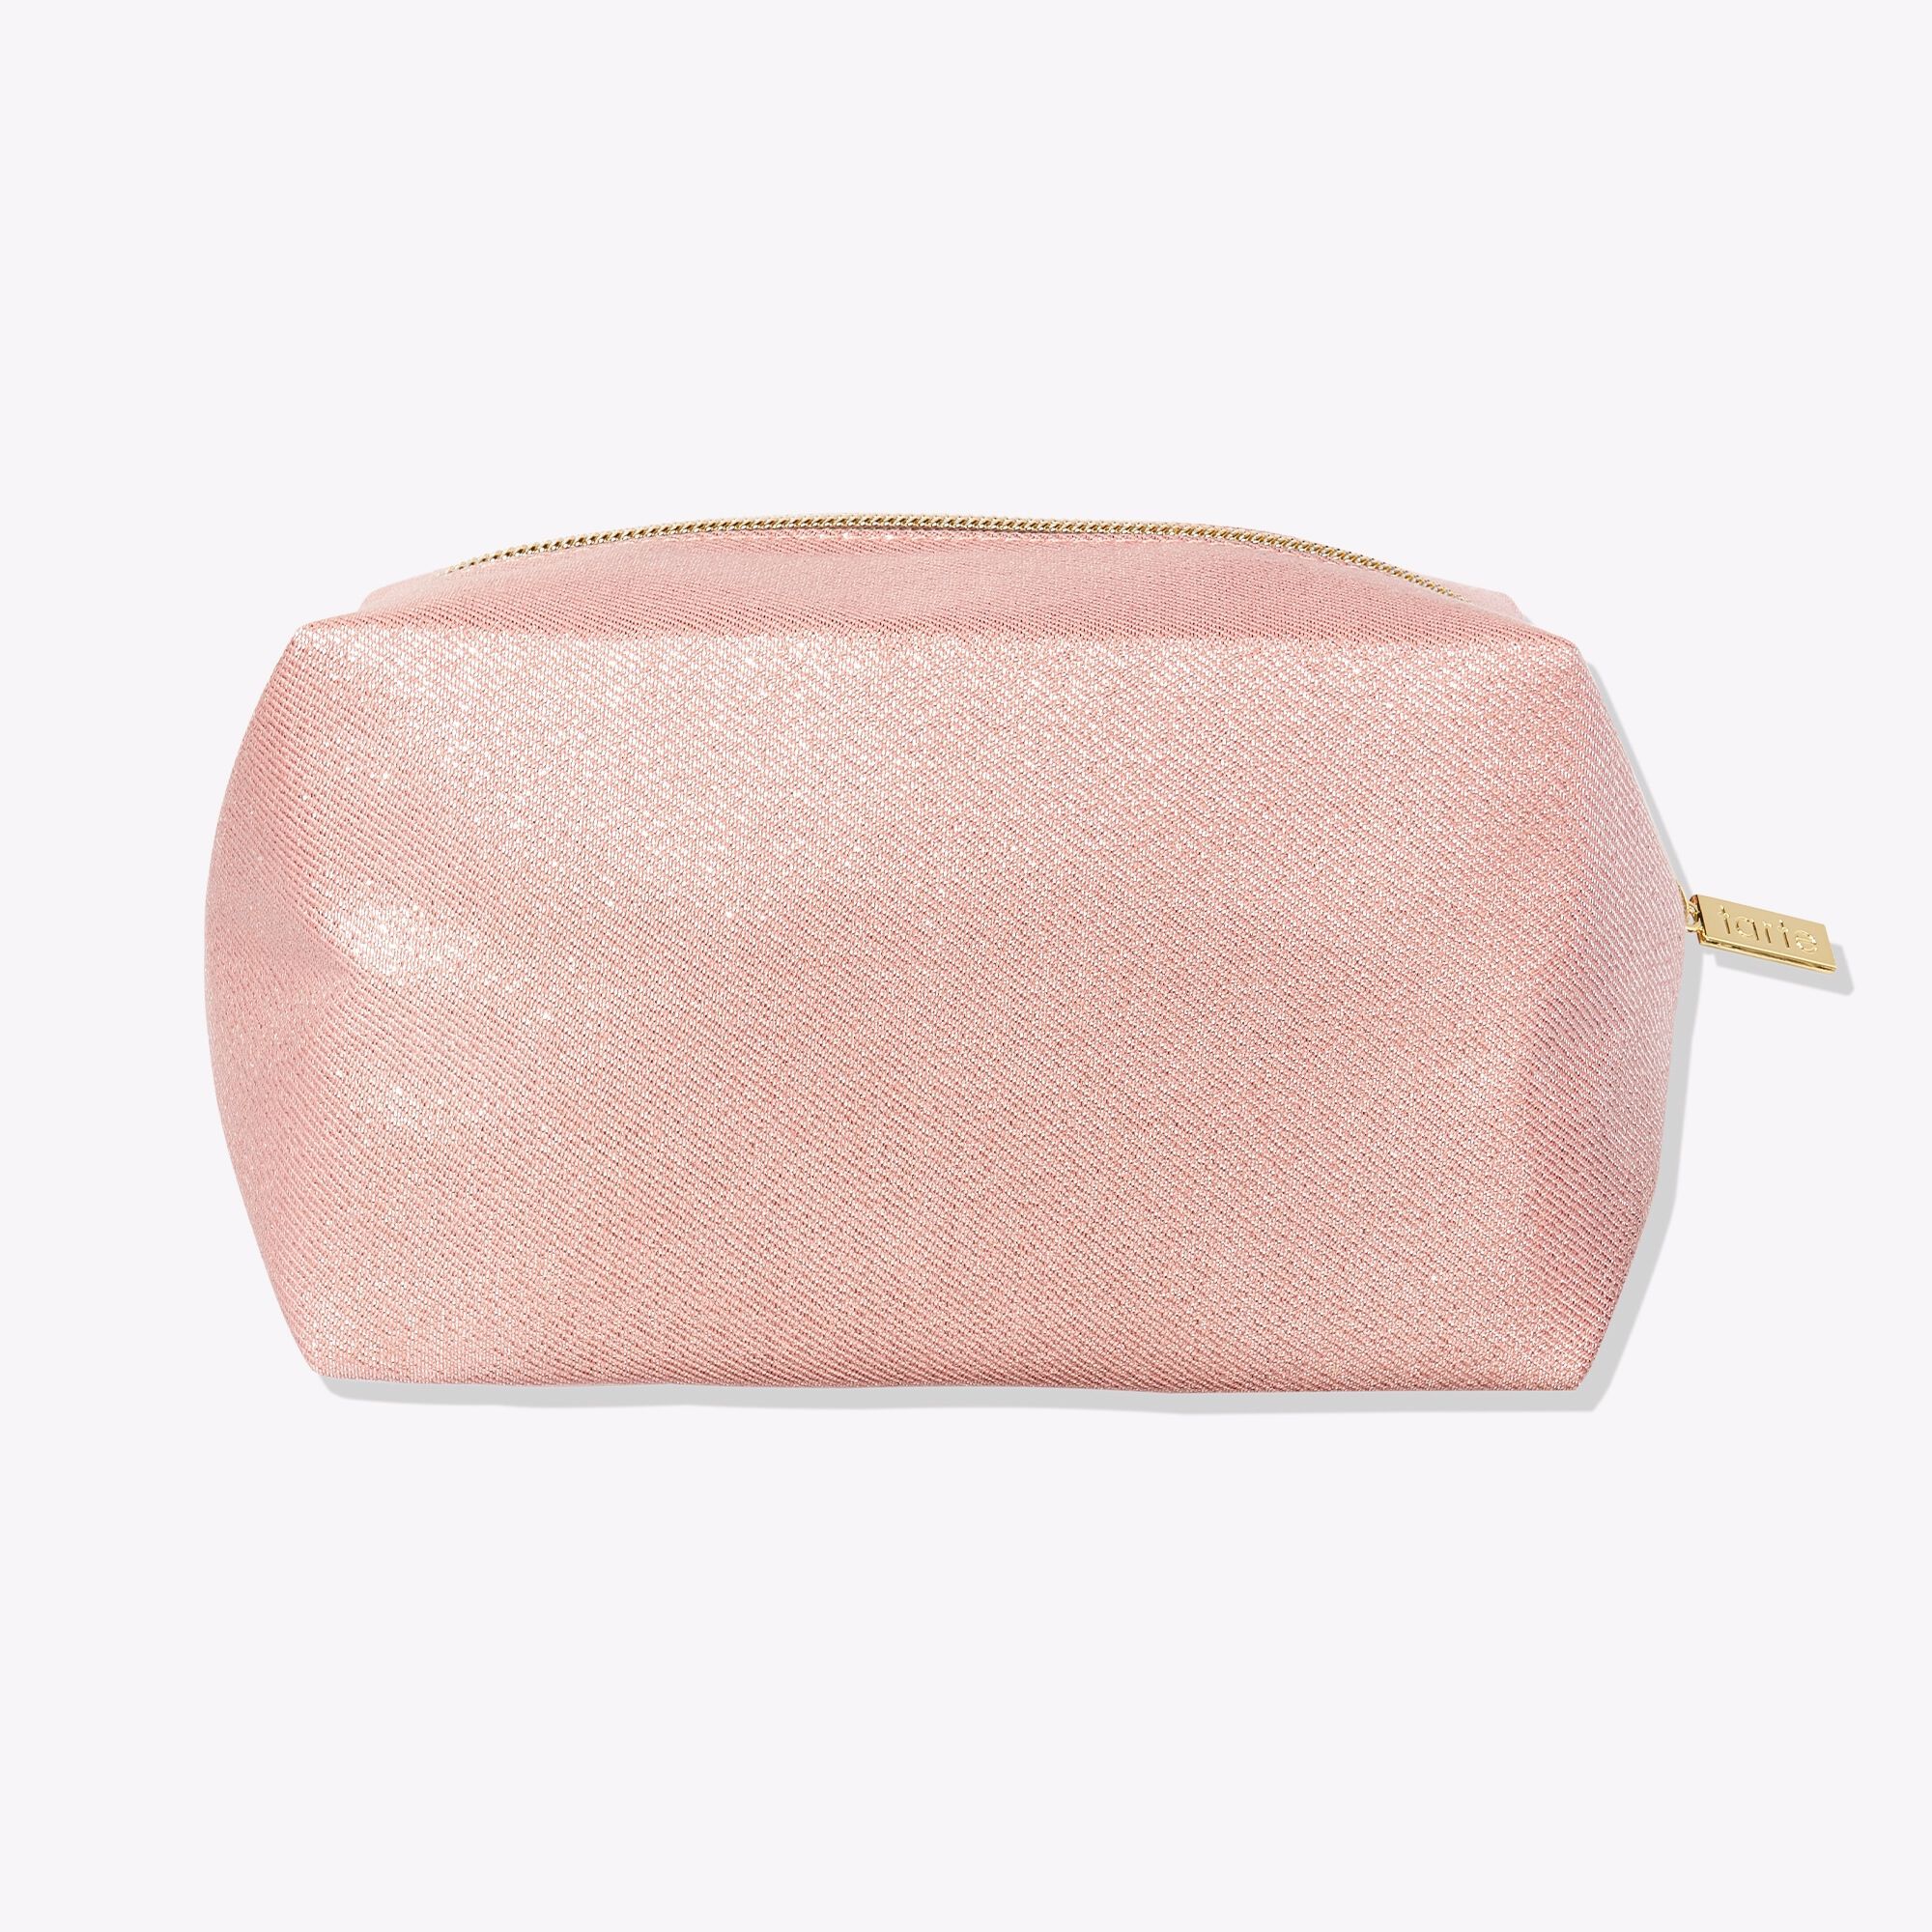 Blushing Beauty Makeup Bag In Pink Shimmer | Tarte™